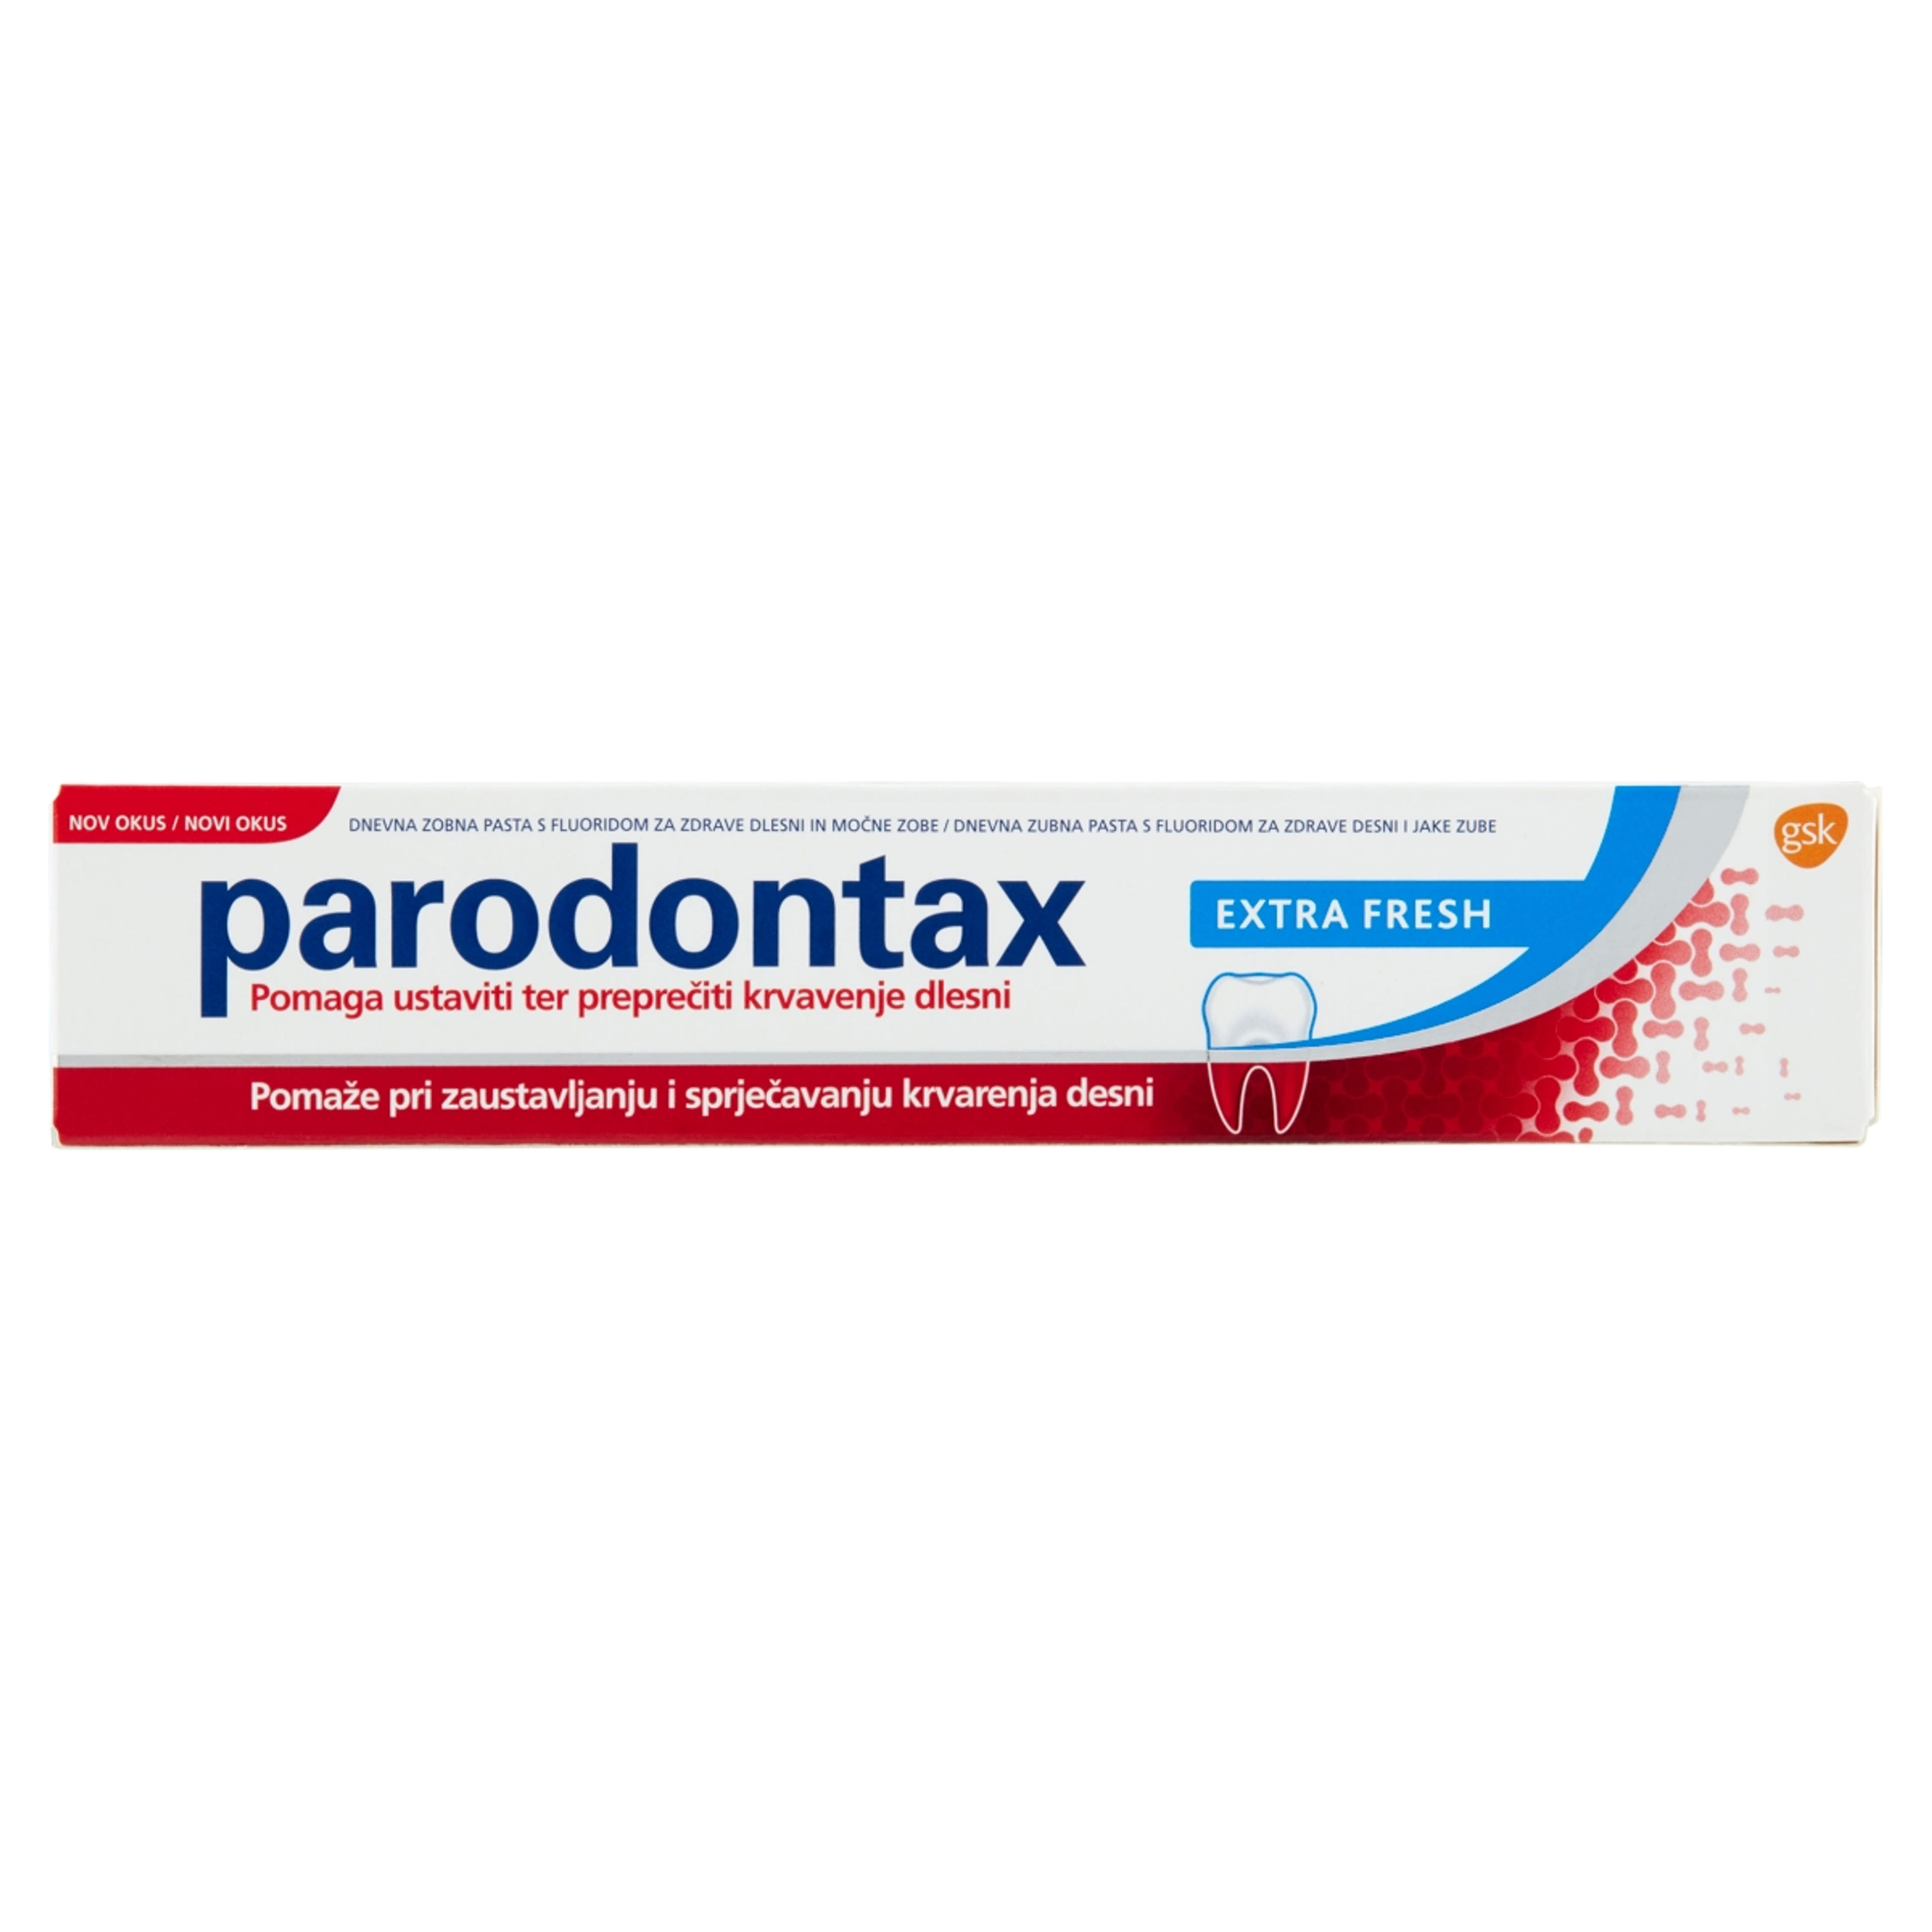 Parodontax Extra Fresh fogkrém - 75 ml-1